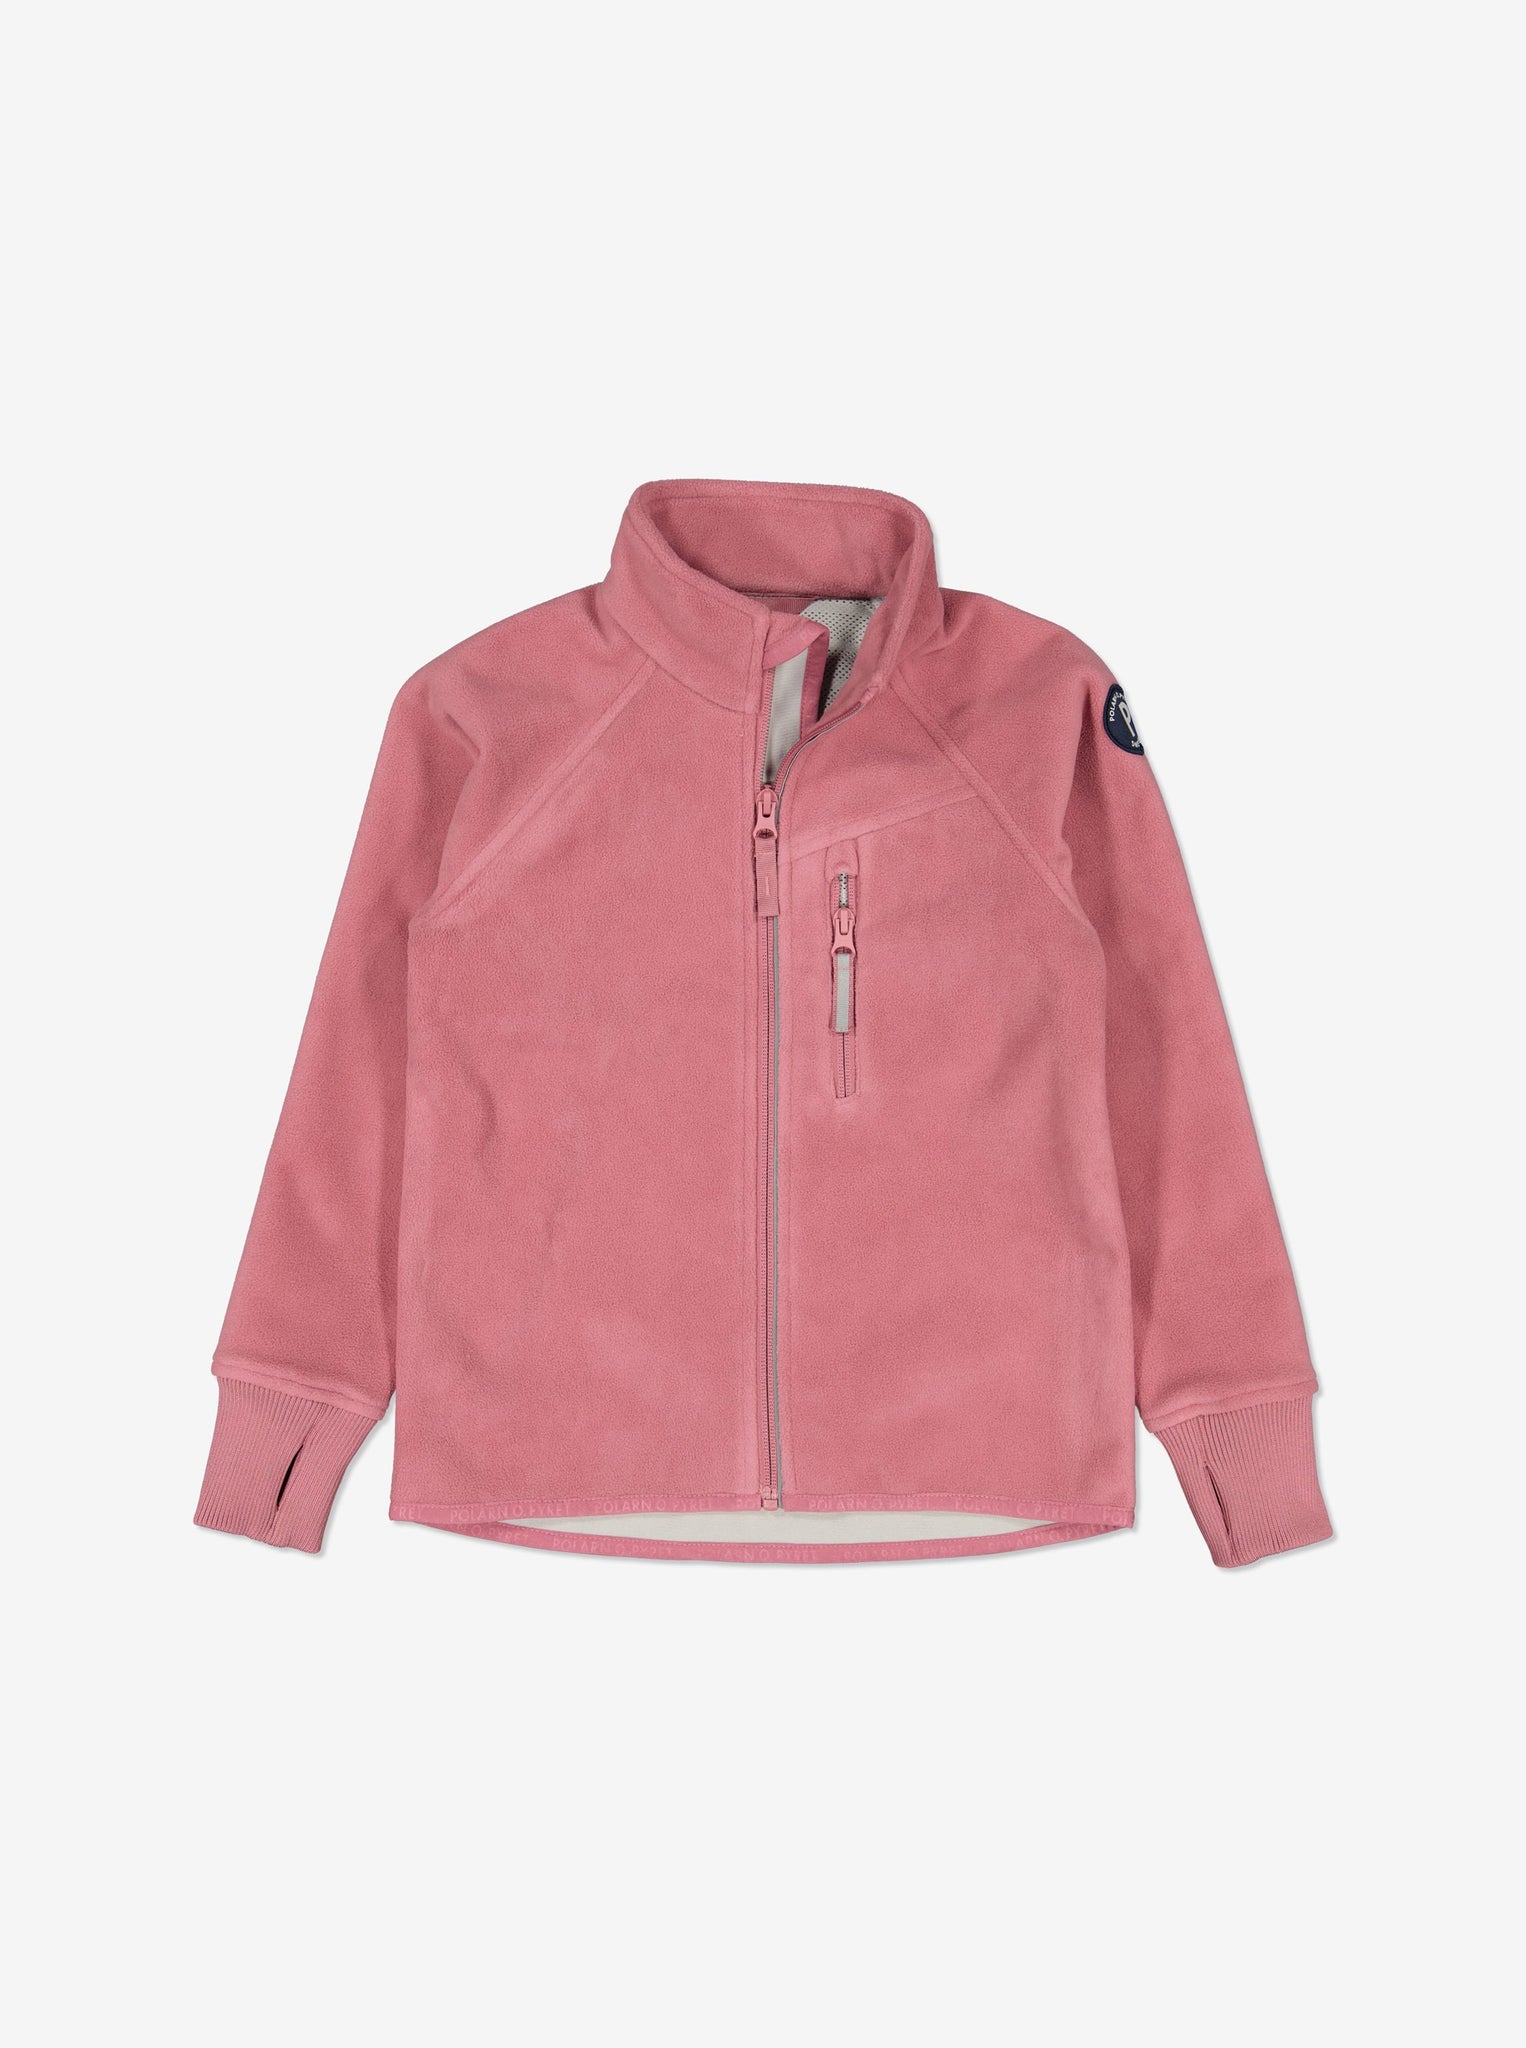 Pink Kids Showerproof Fleece Jacket from Polarn O. Pyret Kidswear. Quality Kids Fleece Jacket